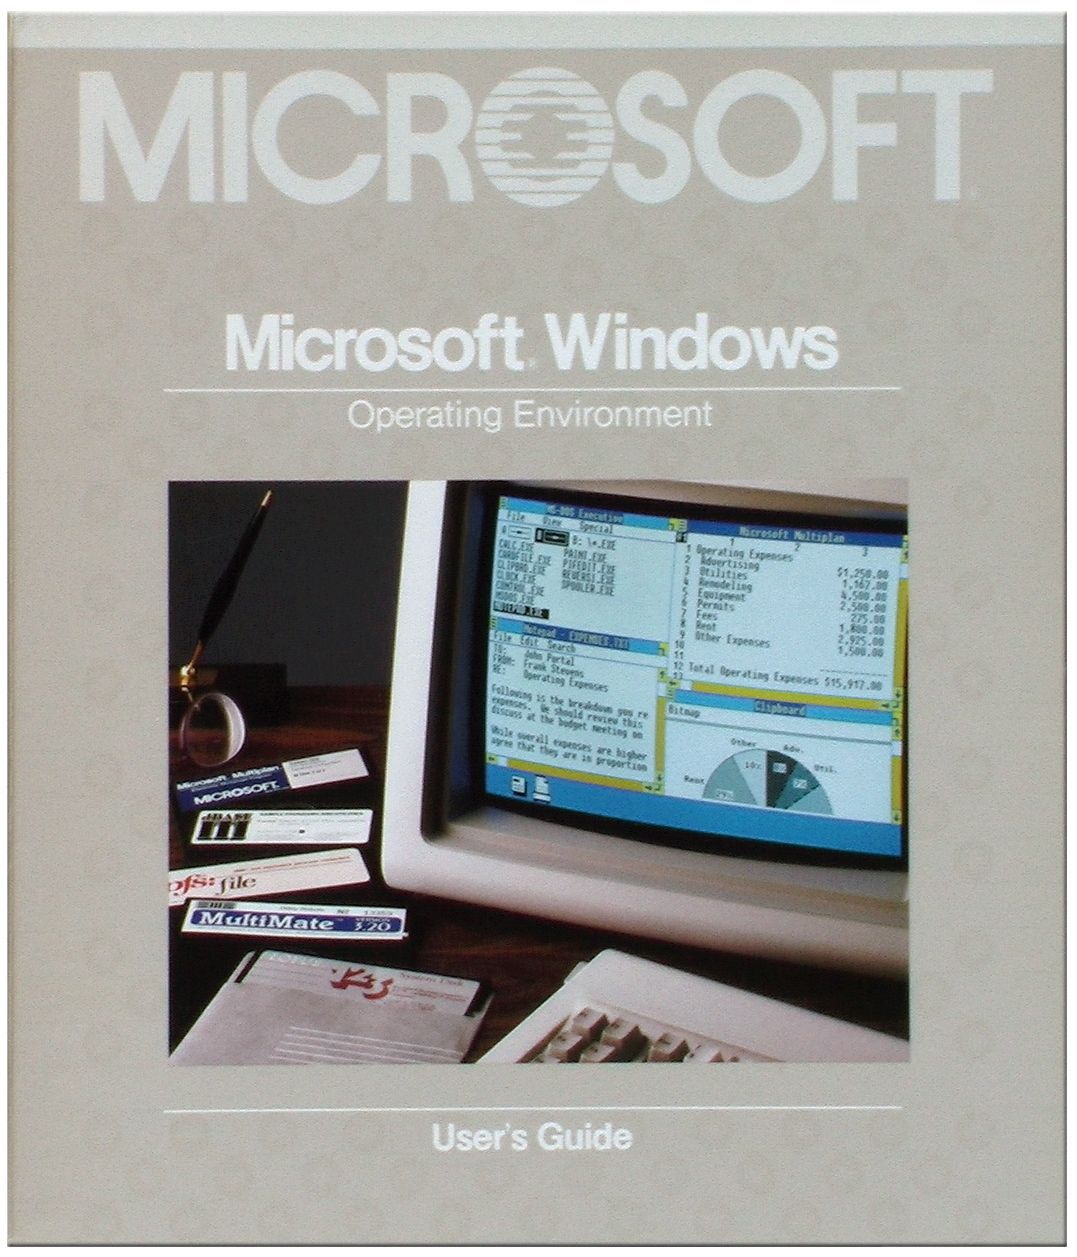 Am 20. November 1985 brachte das damals noch kleine Unternehmen Microsoft Windows 1.0 auf den Markt. Hier siehst du den Microsoft-Schriftzug auf dem Titelblatt des Benutzerhandbuchs.